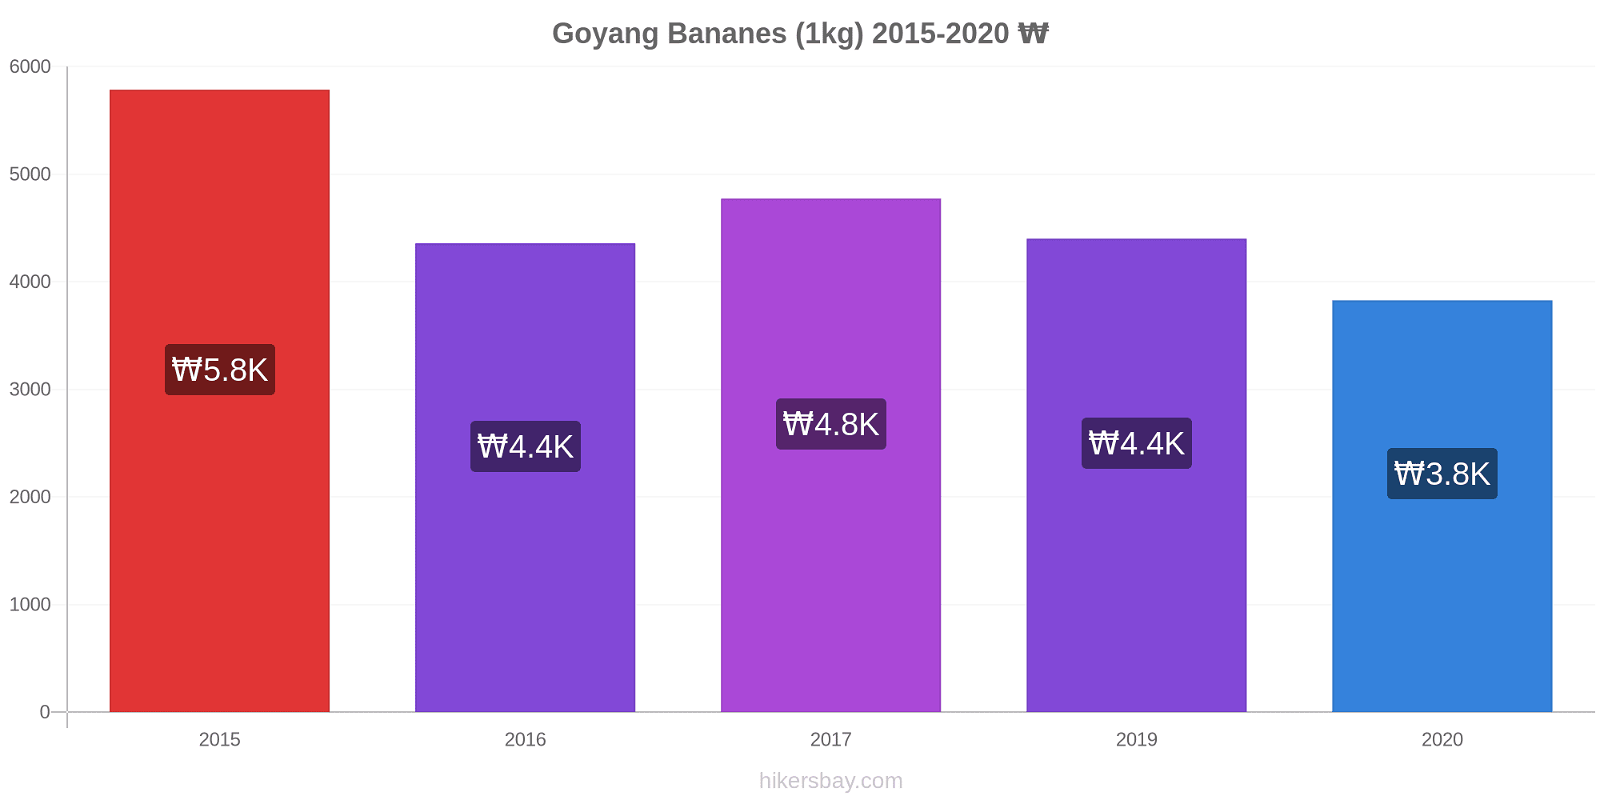 Goyang changements de prix Bananes (1kg) hikersbay.com